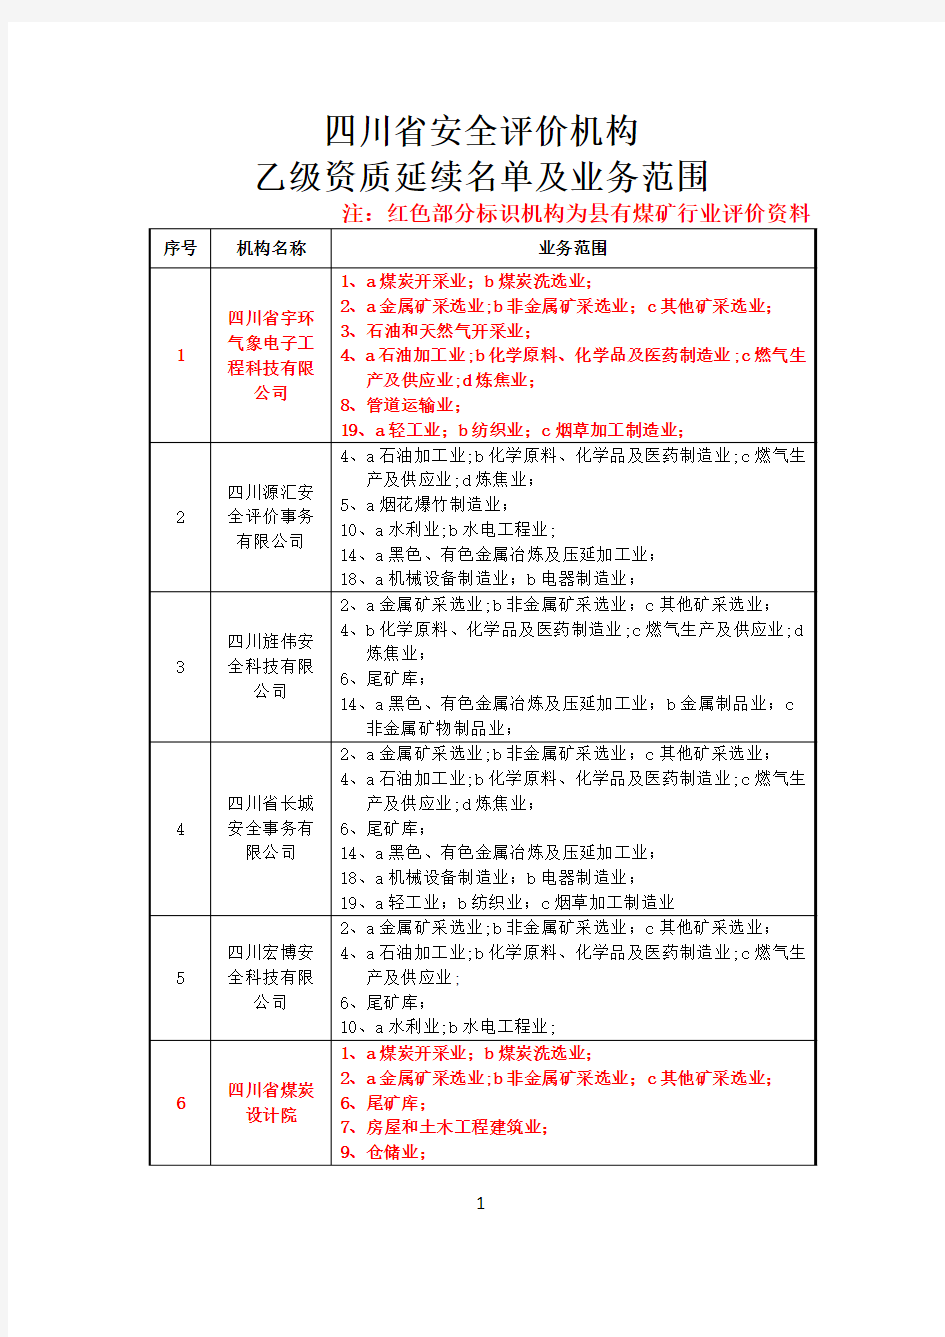 四川省安全评价机构乙级资质延续名单及业务范围